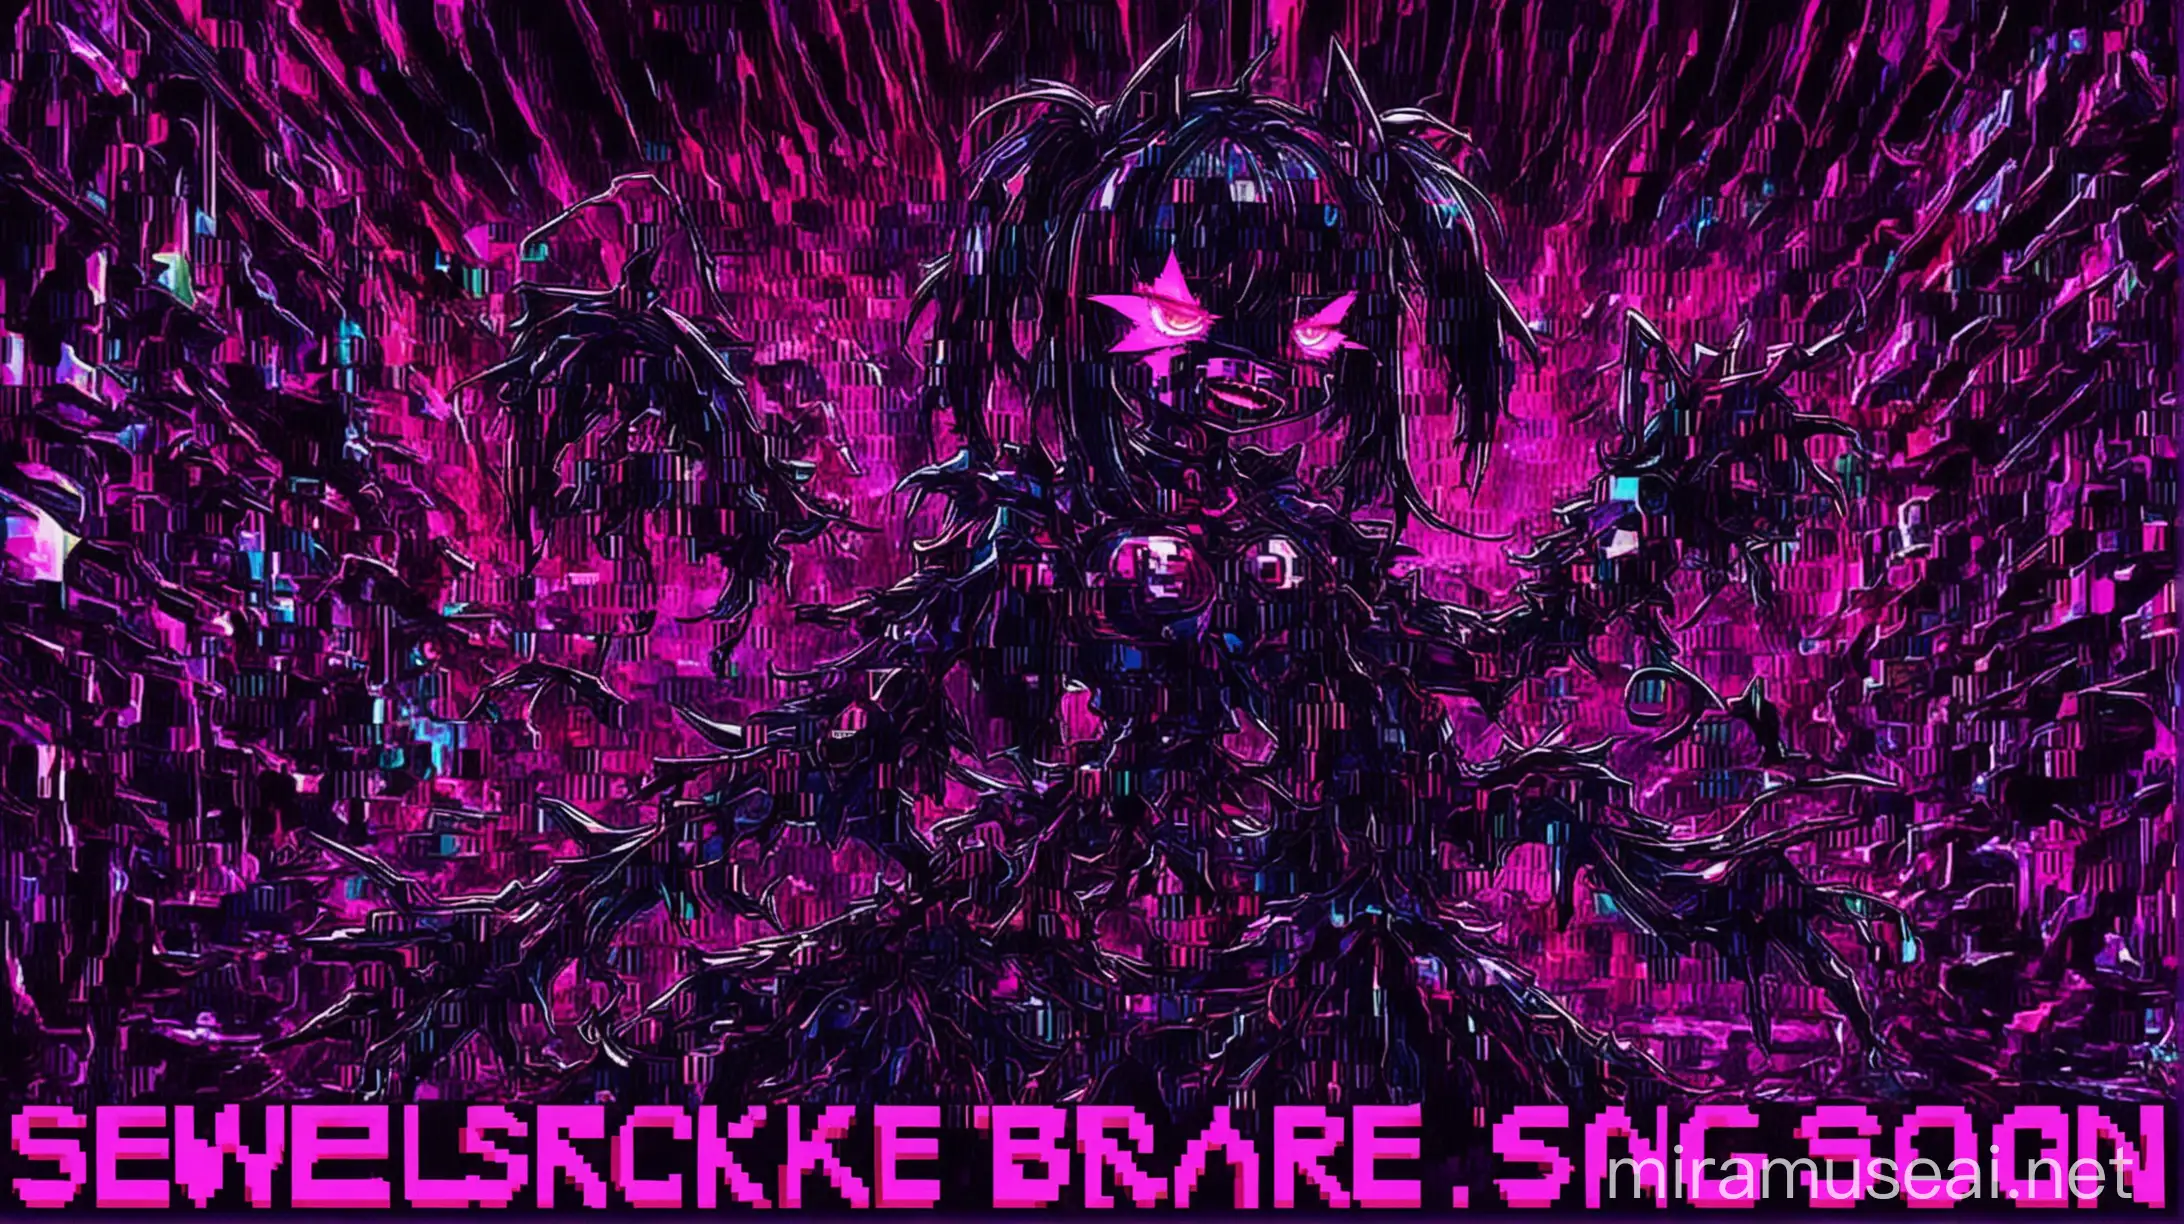 Dark Anime Illustration Sewerslvt Breakcore Song Cover Art